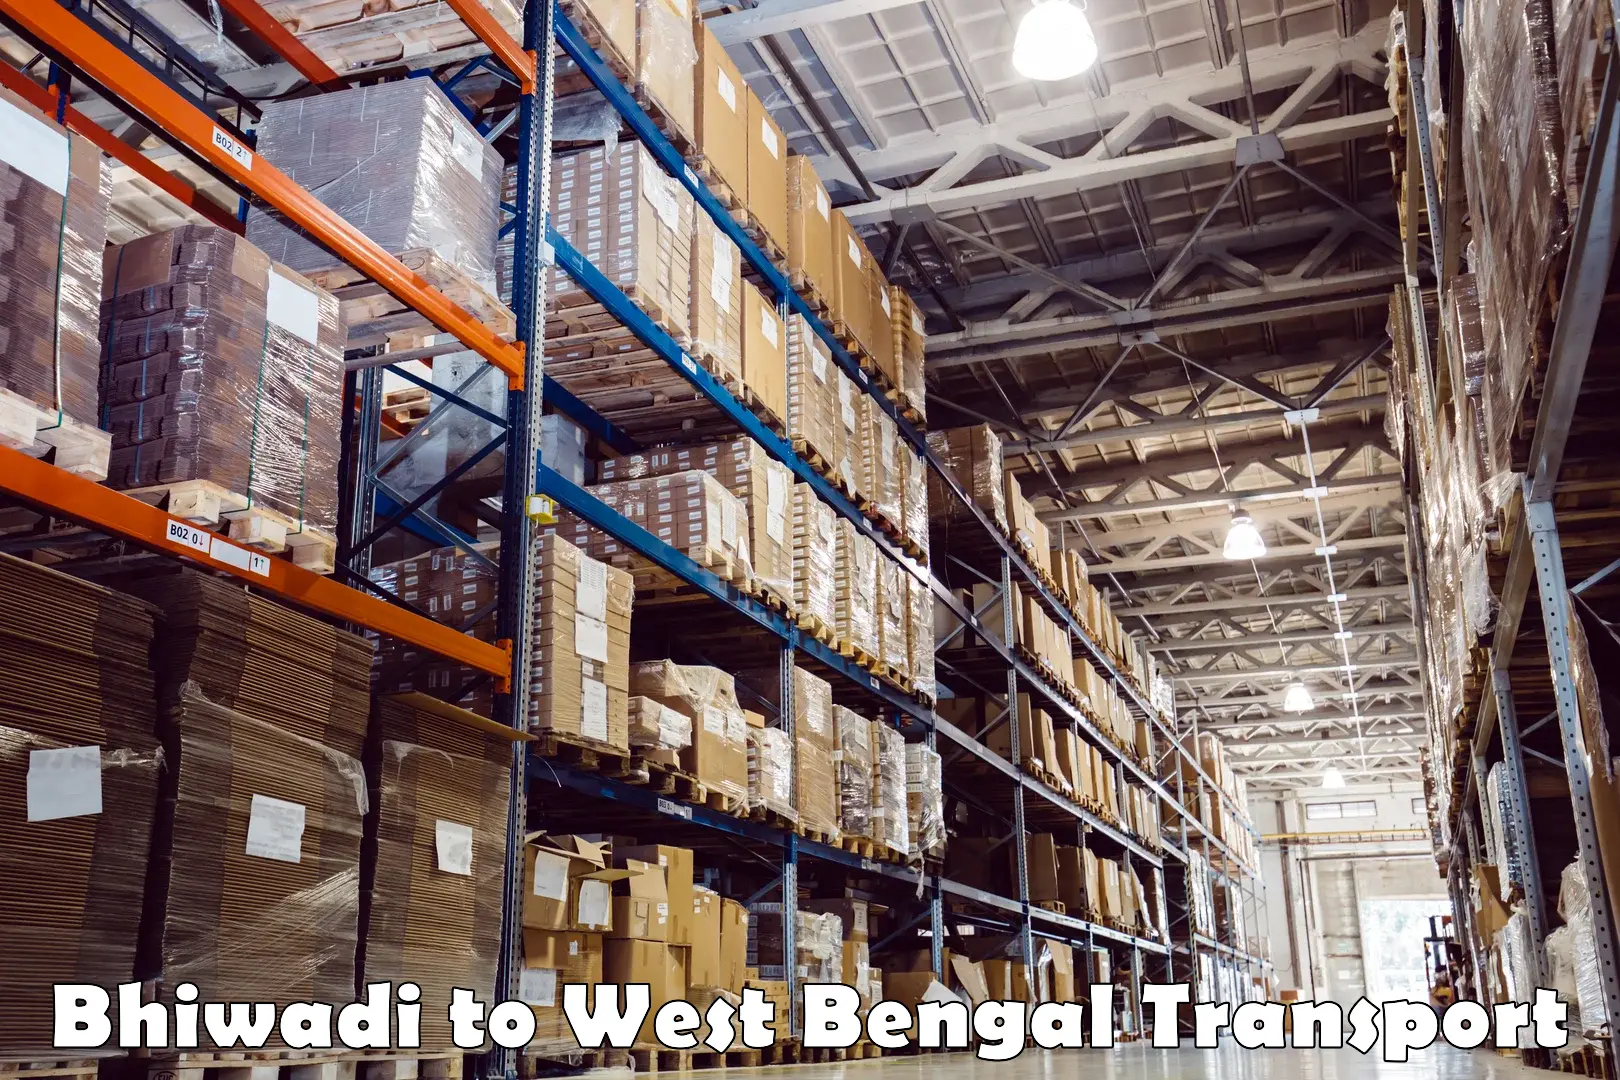 Furniture transport service Bhiwadi to West Bengal